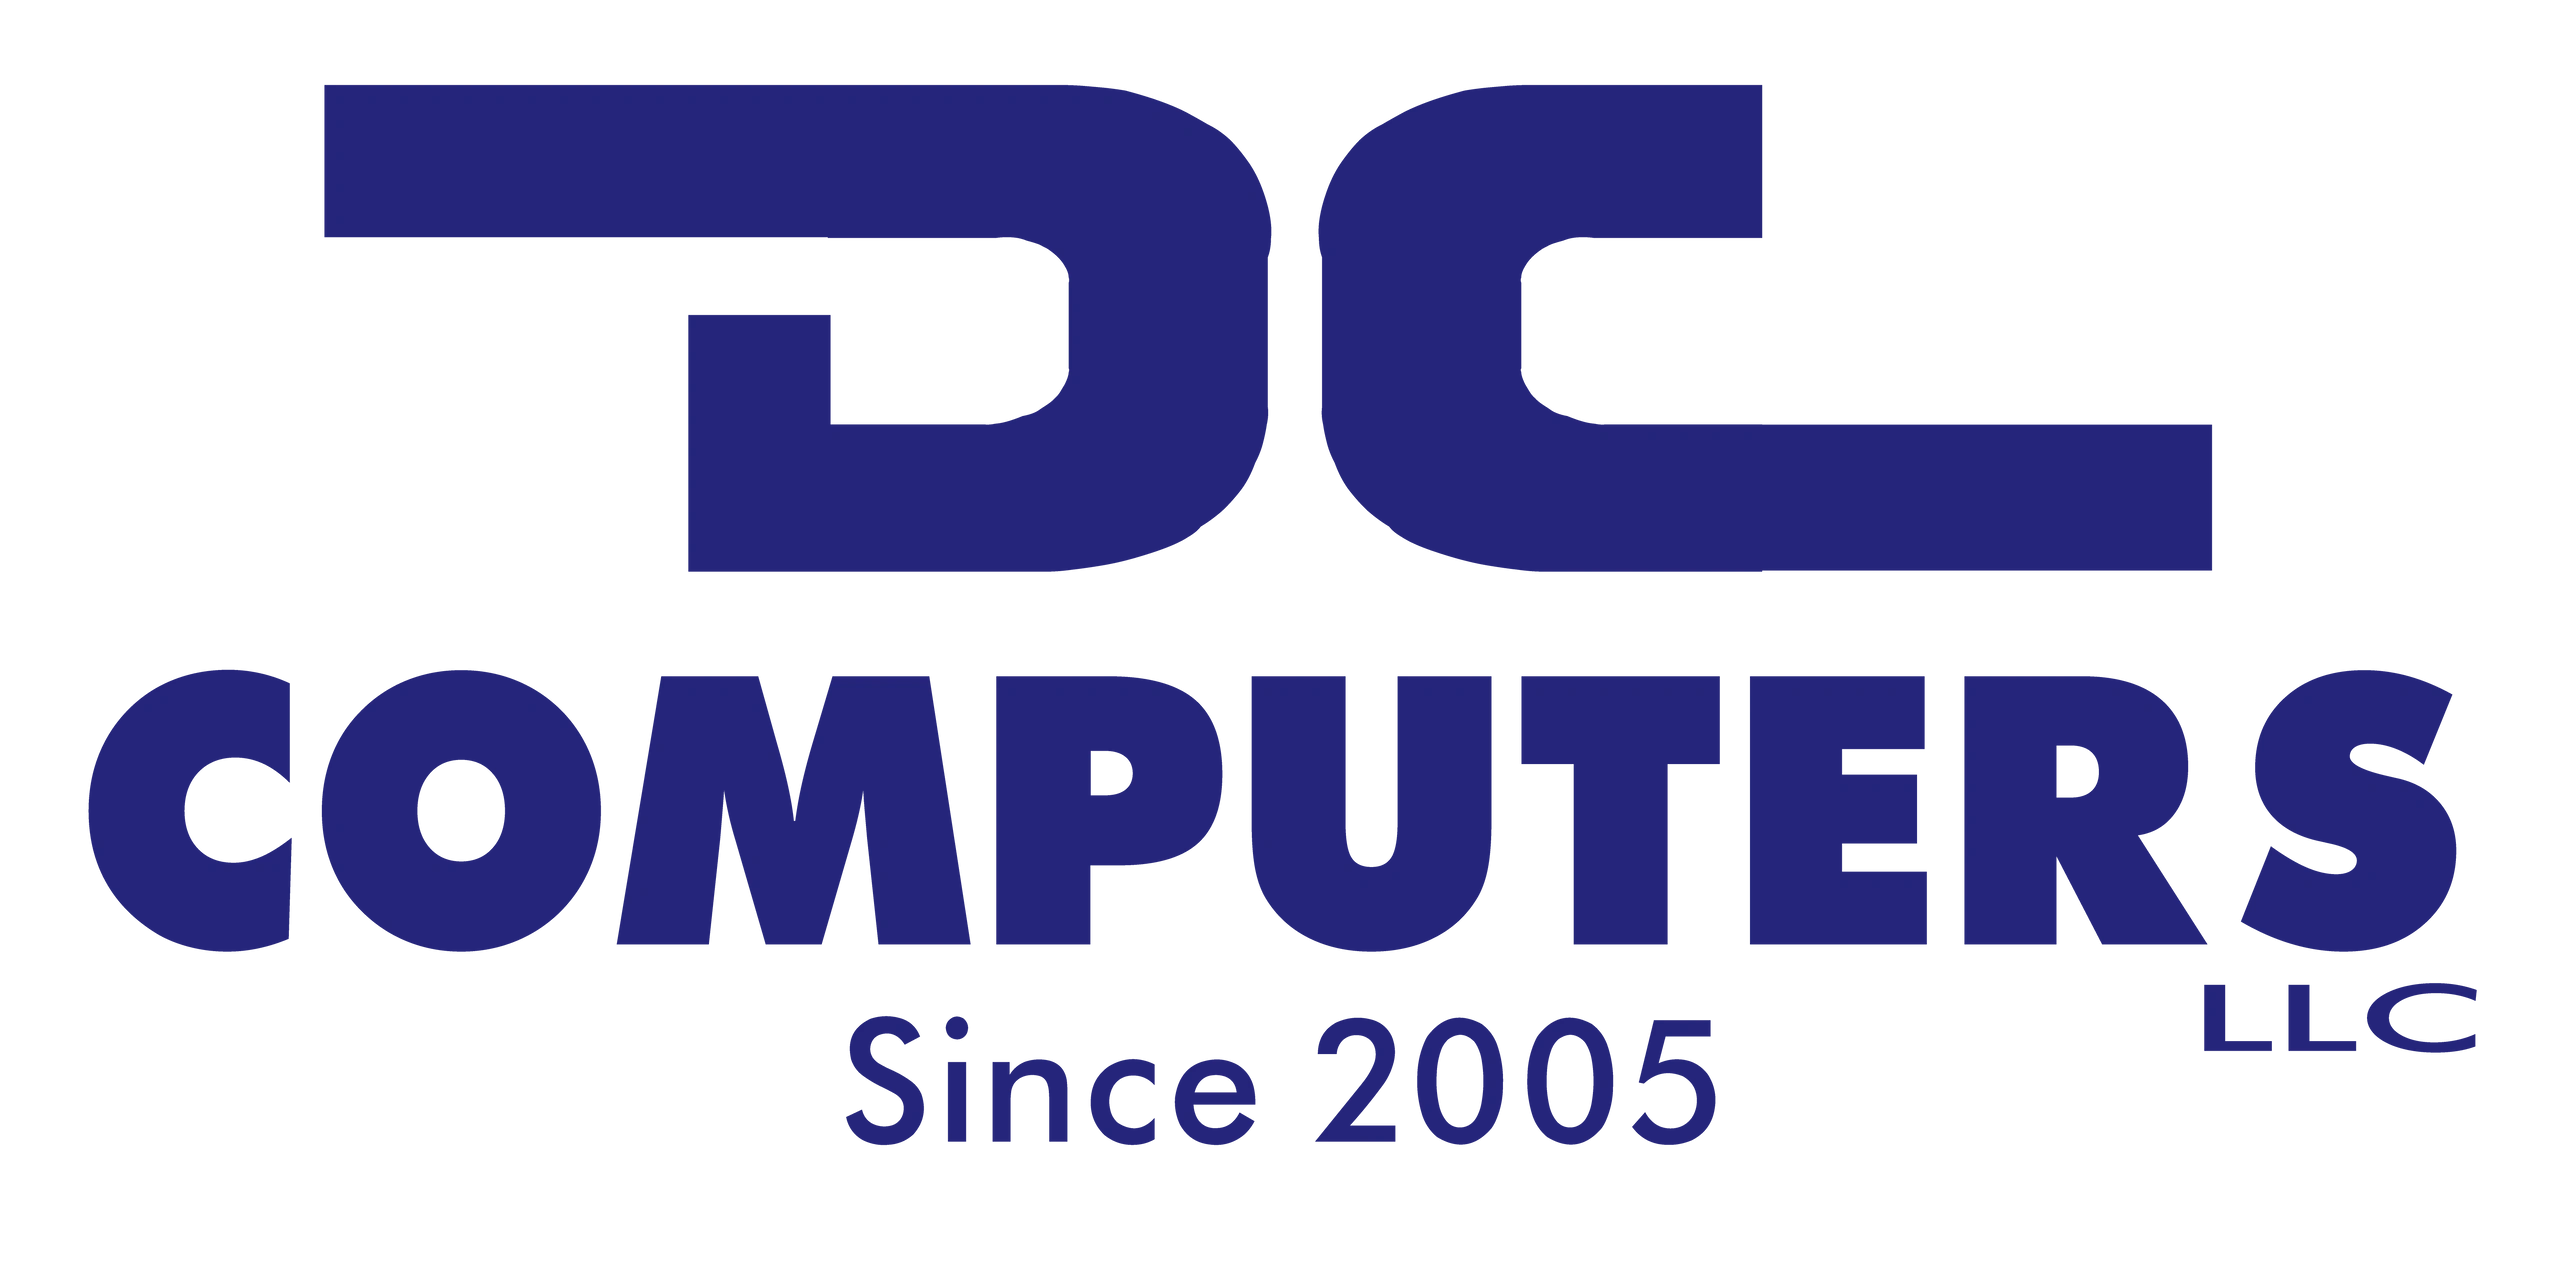 DC COMPUTERS LLC - Computer Repair, Computer Sales